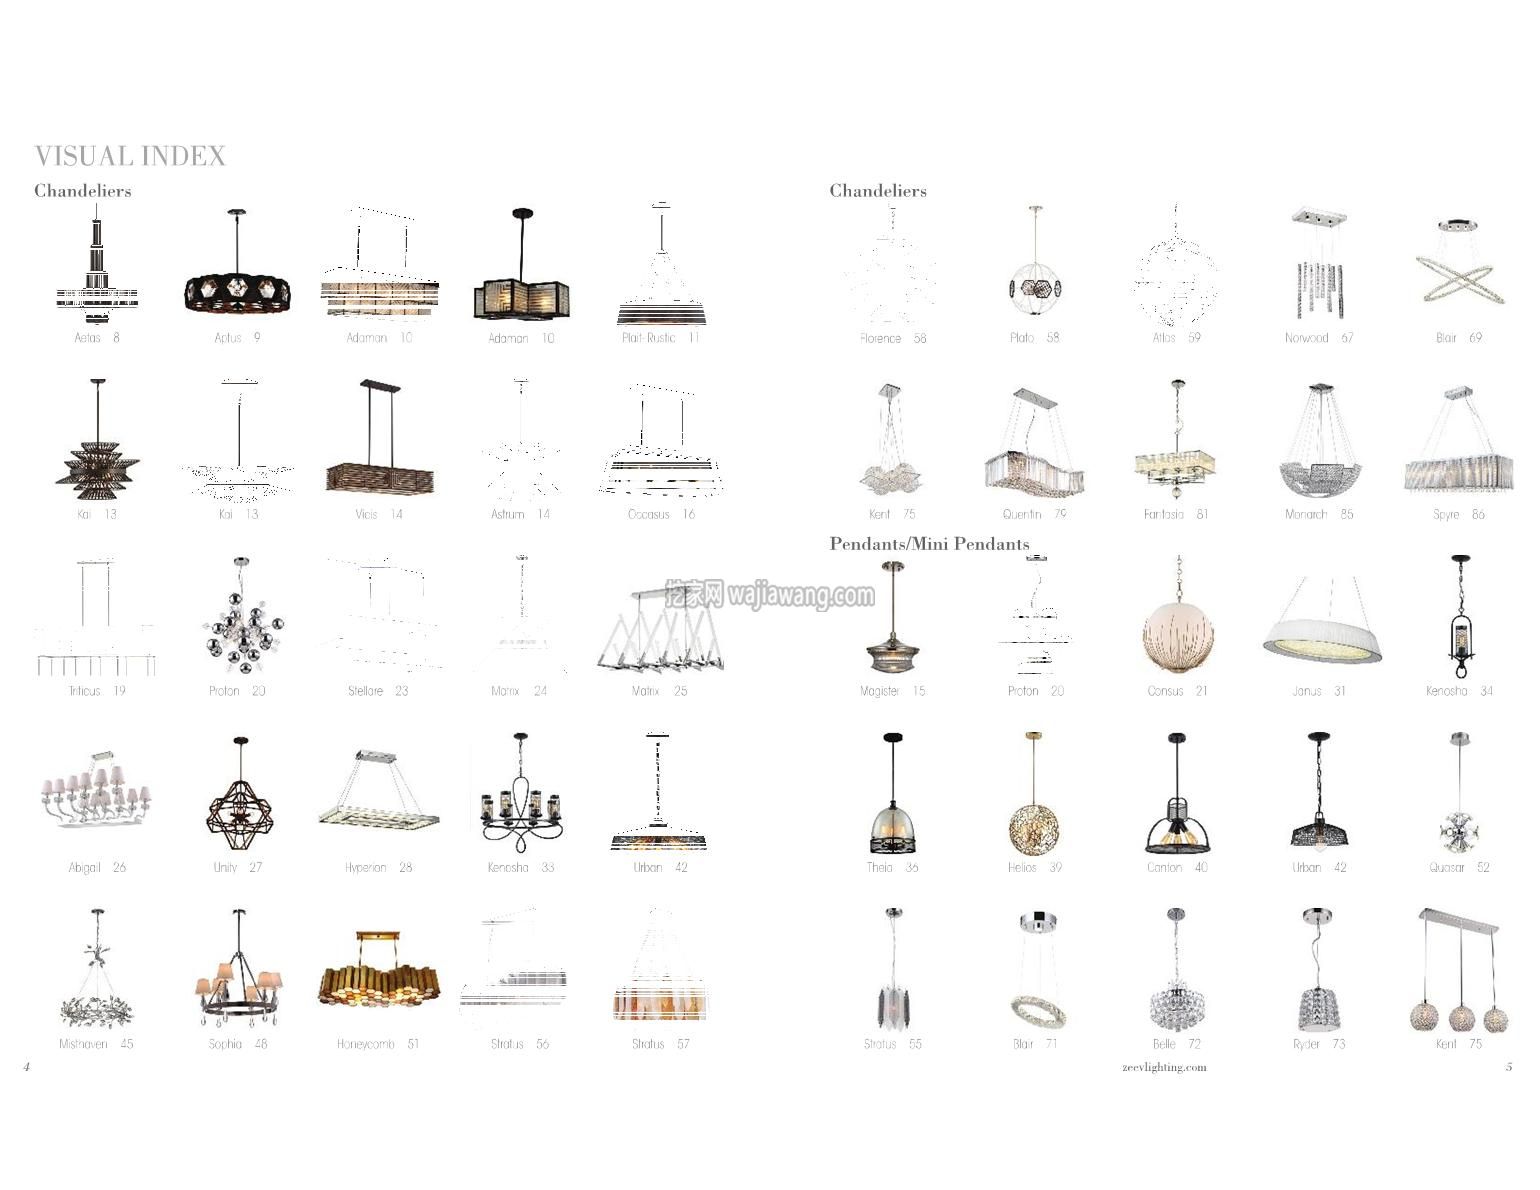 灯饰设计 Zeev 2016年现代吊灯灯饰设计(图)